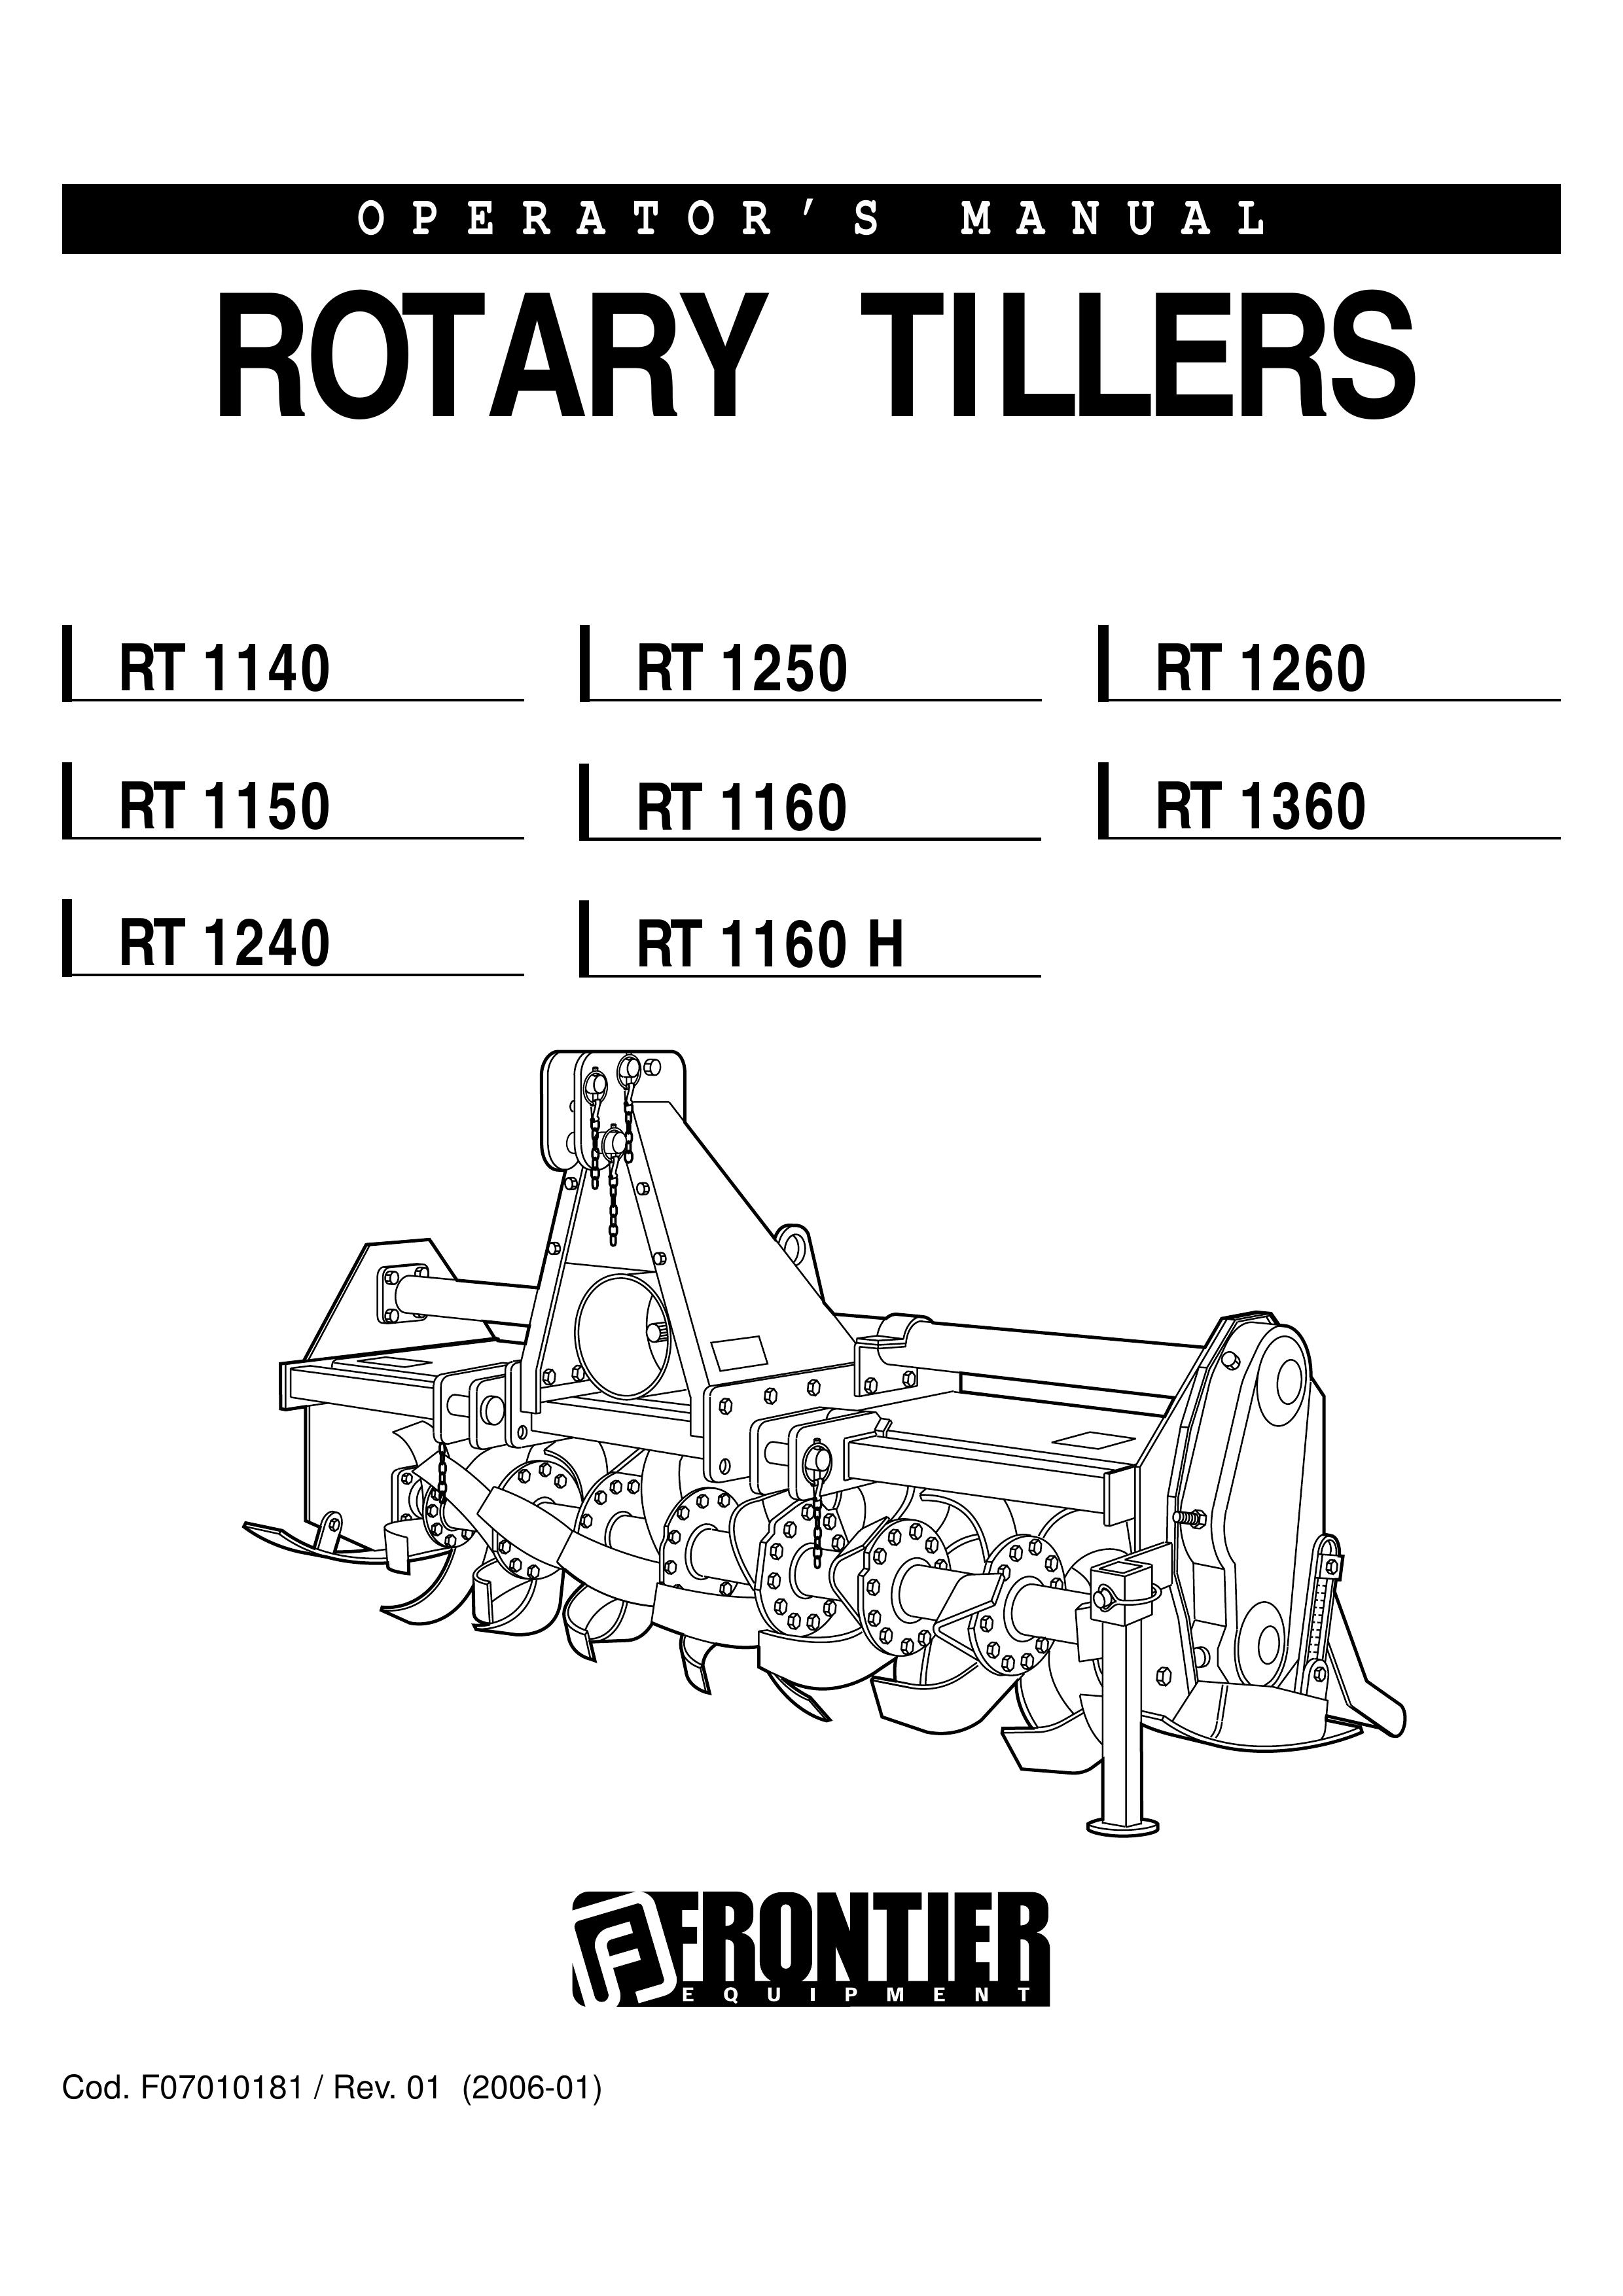 John Deere RT1160 Tiller User Manual